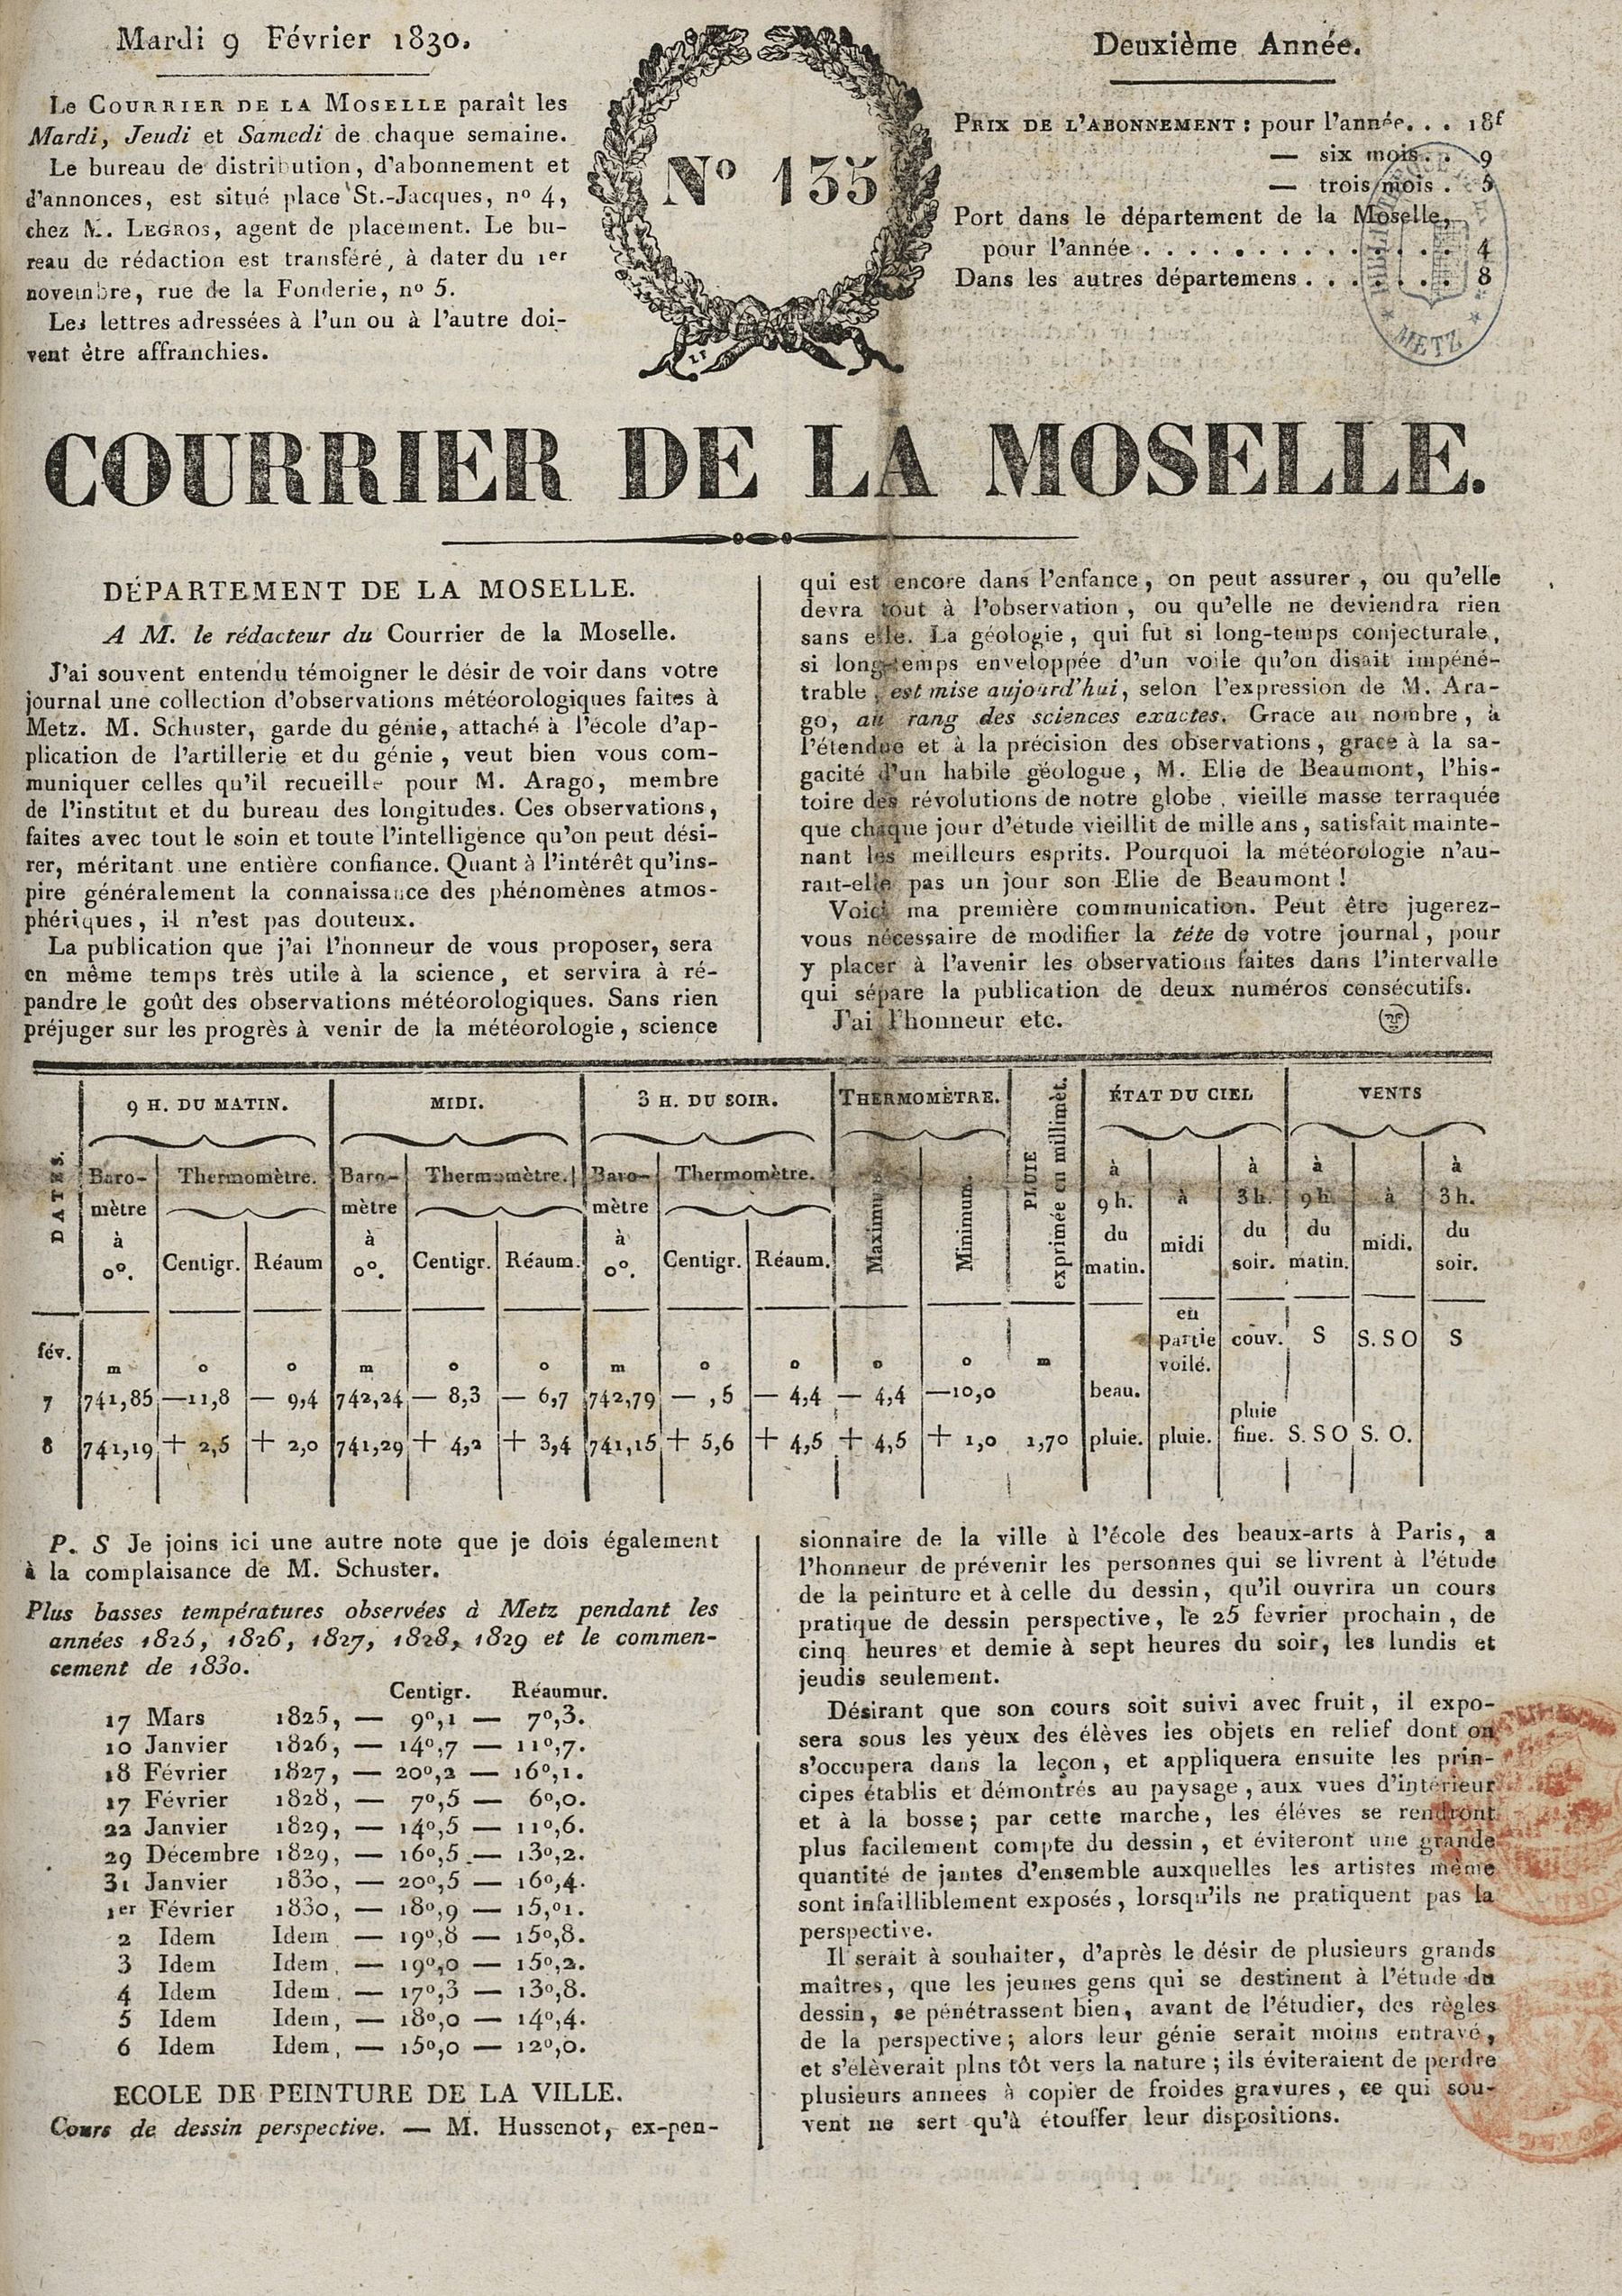 Contenu du Courrier de la Moselle